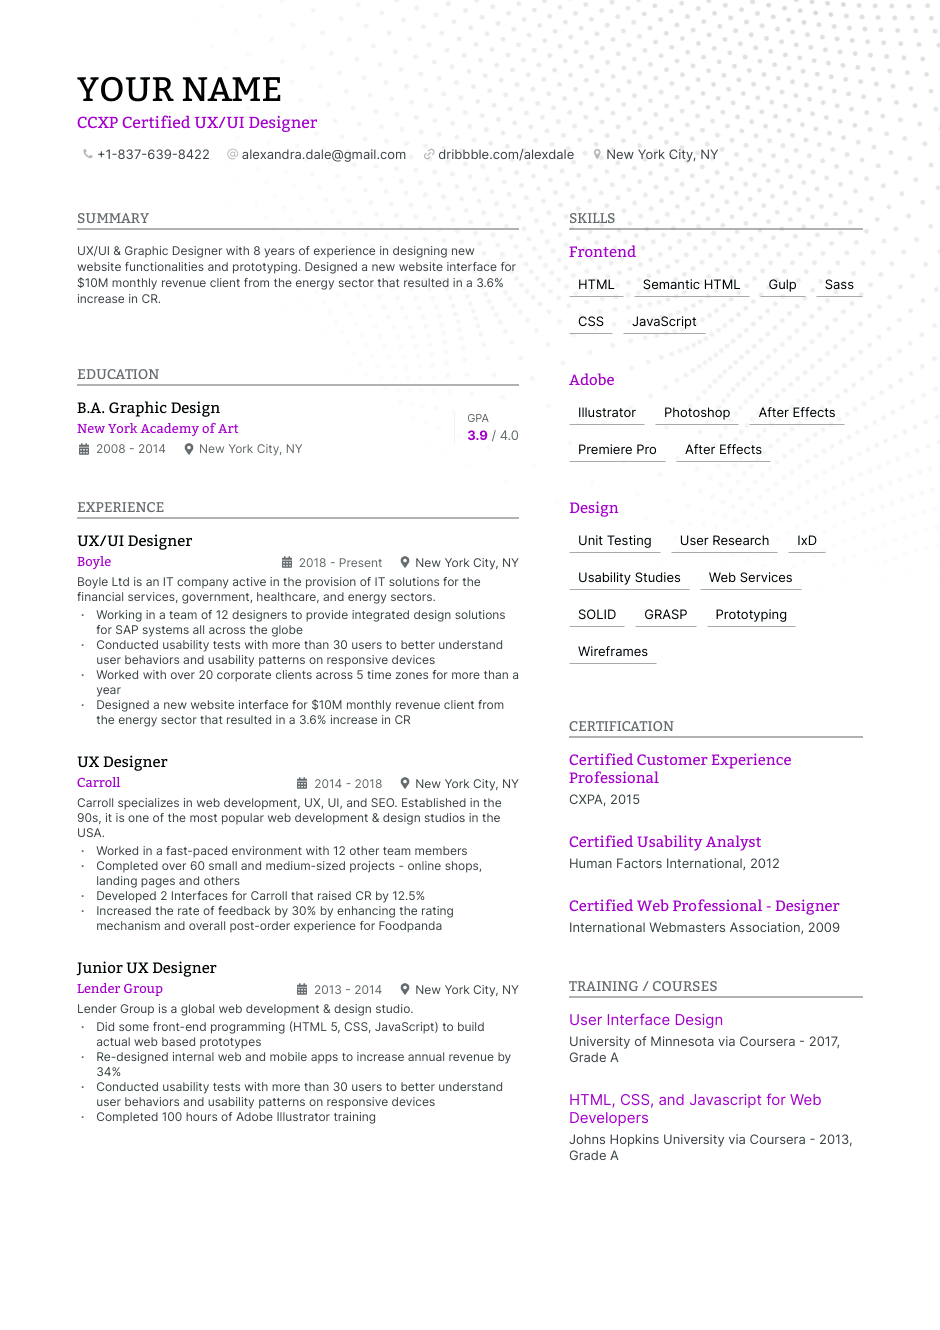 CCXP Certified UX/UI Designer resume example